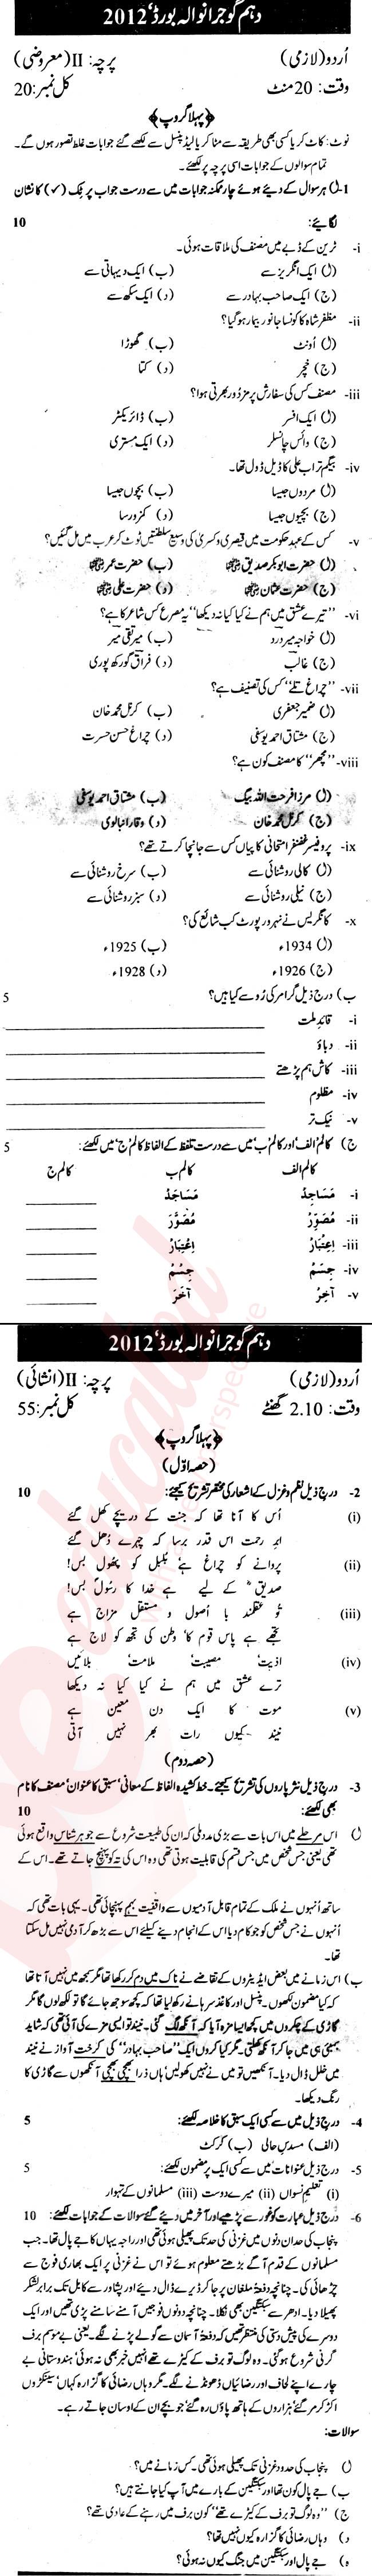 Urdu 10th Urdu Medium Past Paper Group 1 BISE Gujranwala 2012